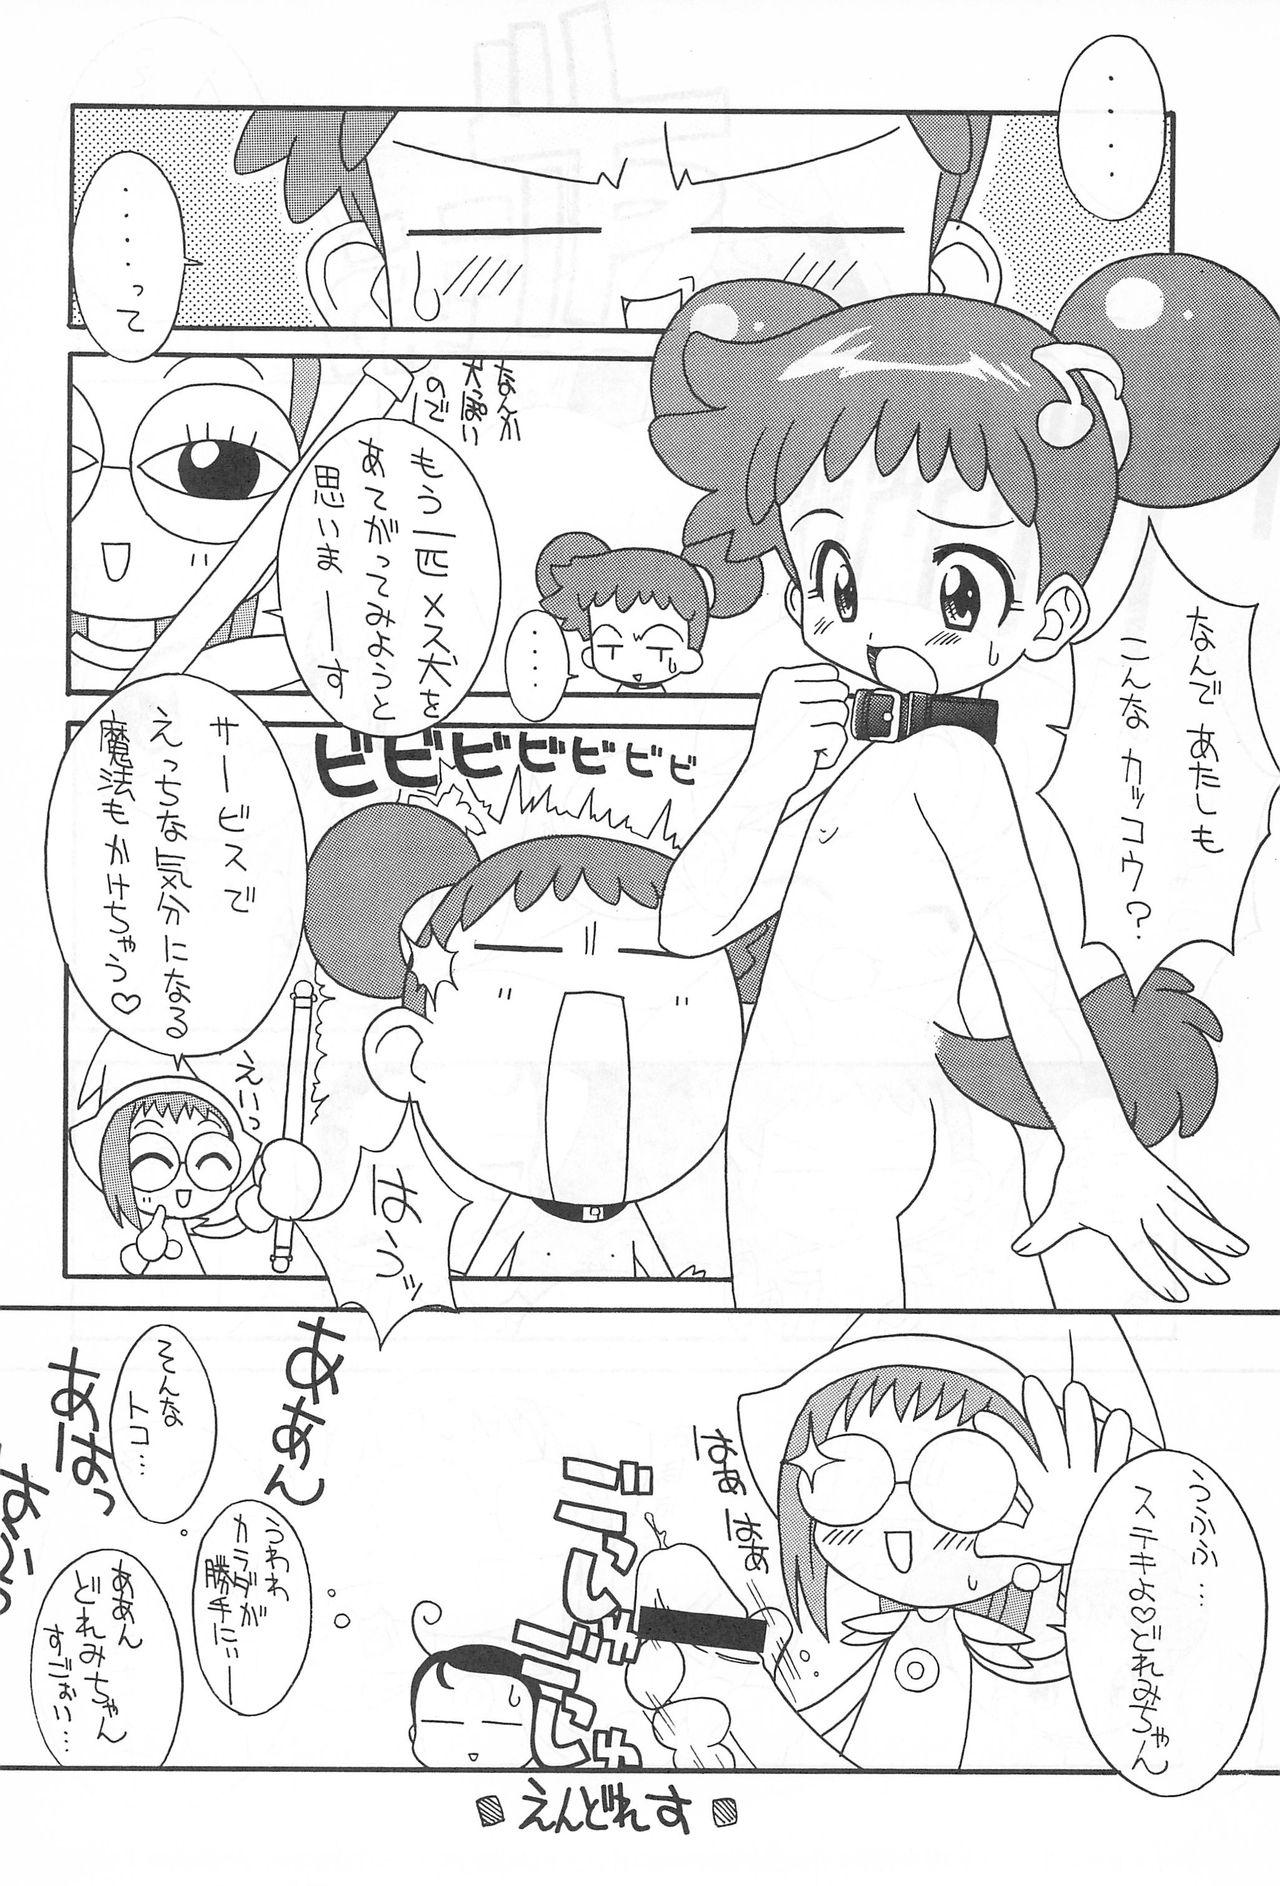 Sucking Cock Pretty Ecchi - Ojamajo doremi Hardcorend - Page 10